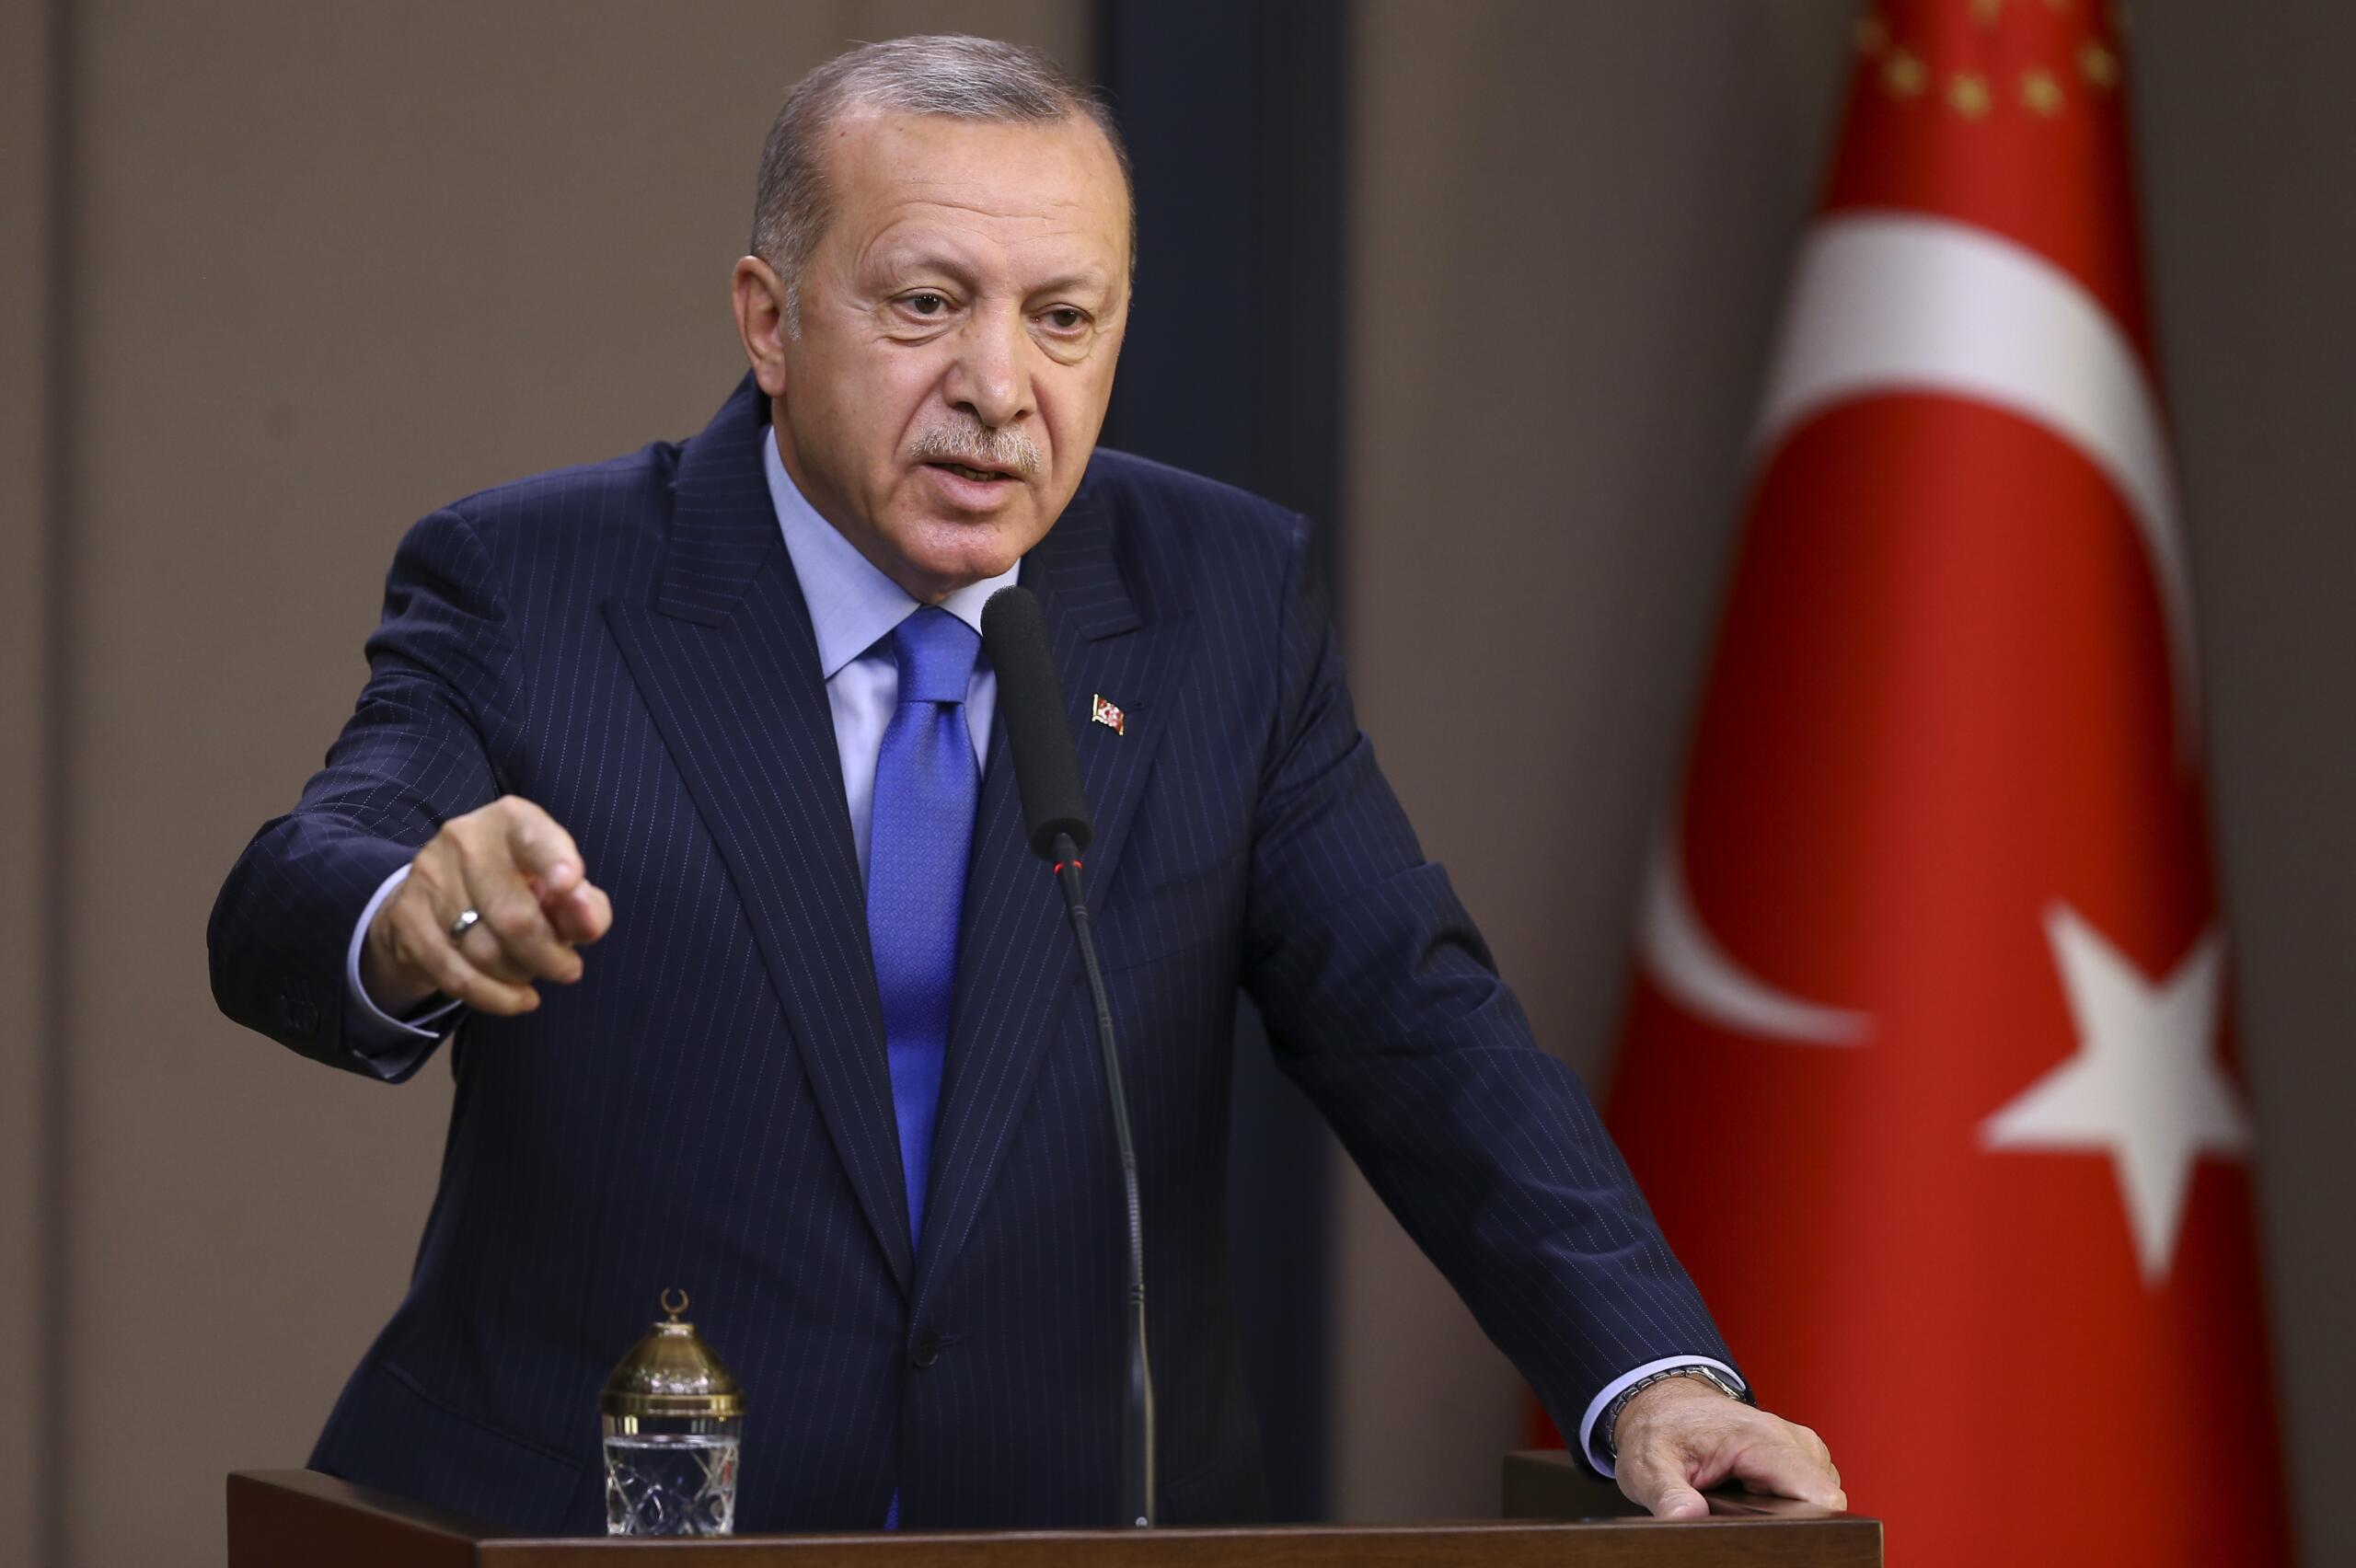 Recep Tayyip Erdoğan, Anayasa Mahkemesi Başkanı Bu Yanlışından Süratle Dönmelidir. Dönmediği Takdirde Atacağımız Adımlar Farklı Olacaktır.”